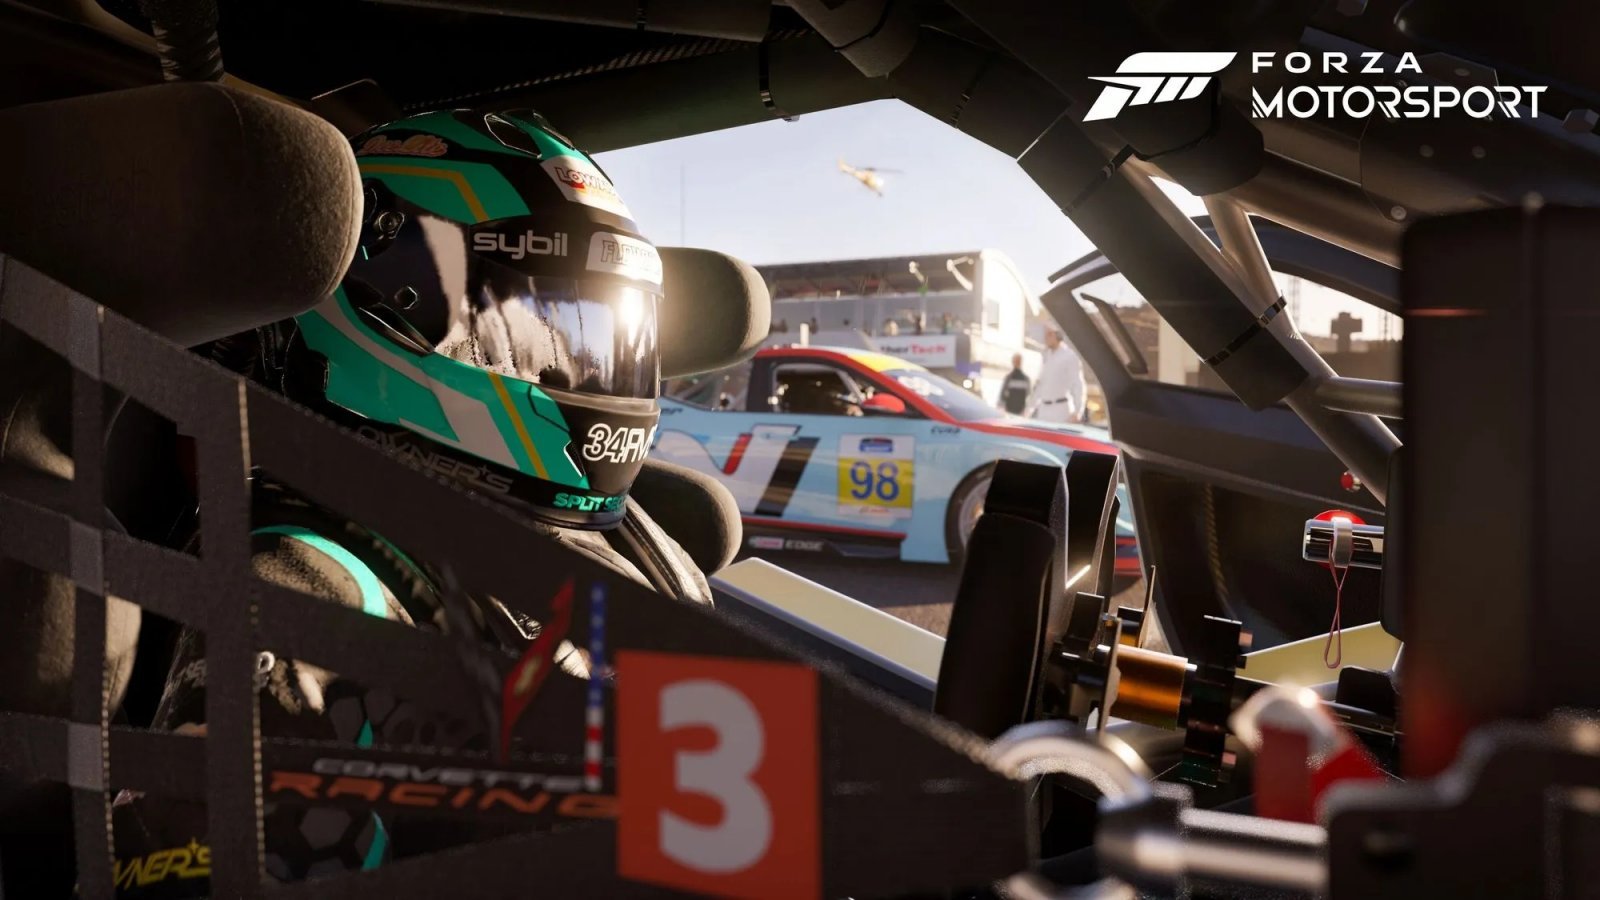 Forza Motorsport: un video mostra l'Update 4, fra Daytona e altre novità in arrivo